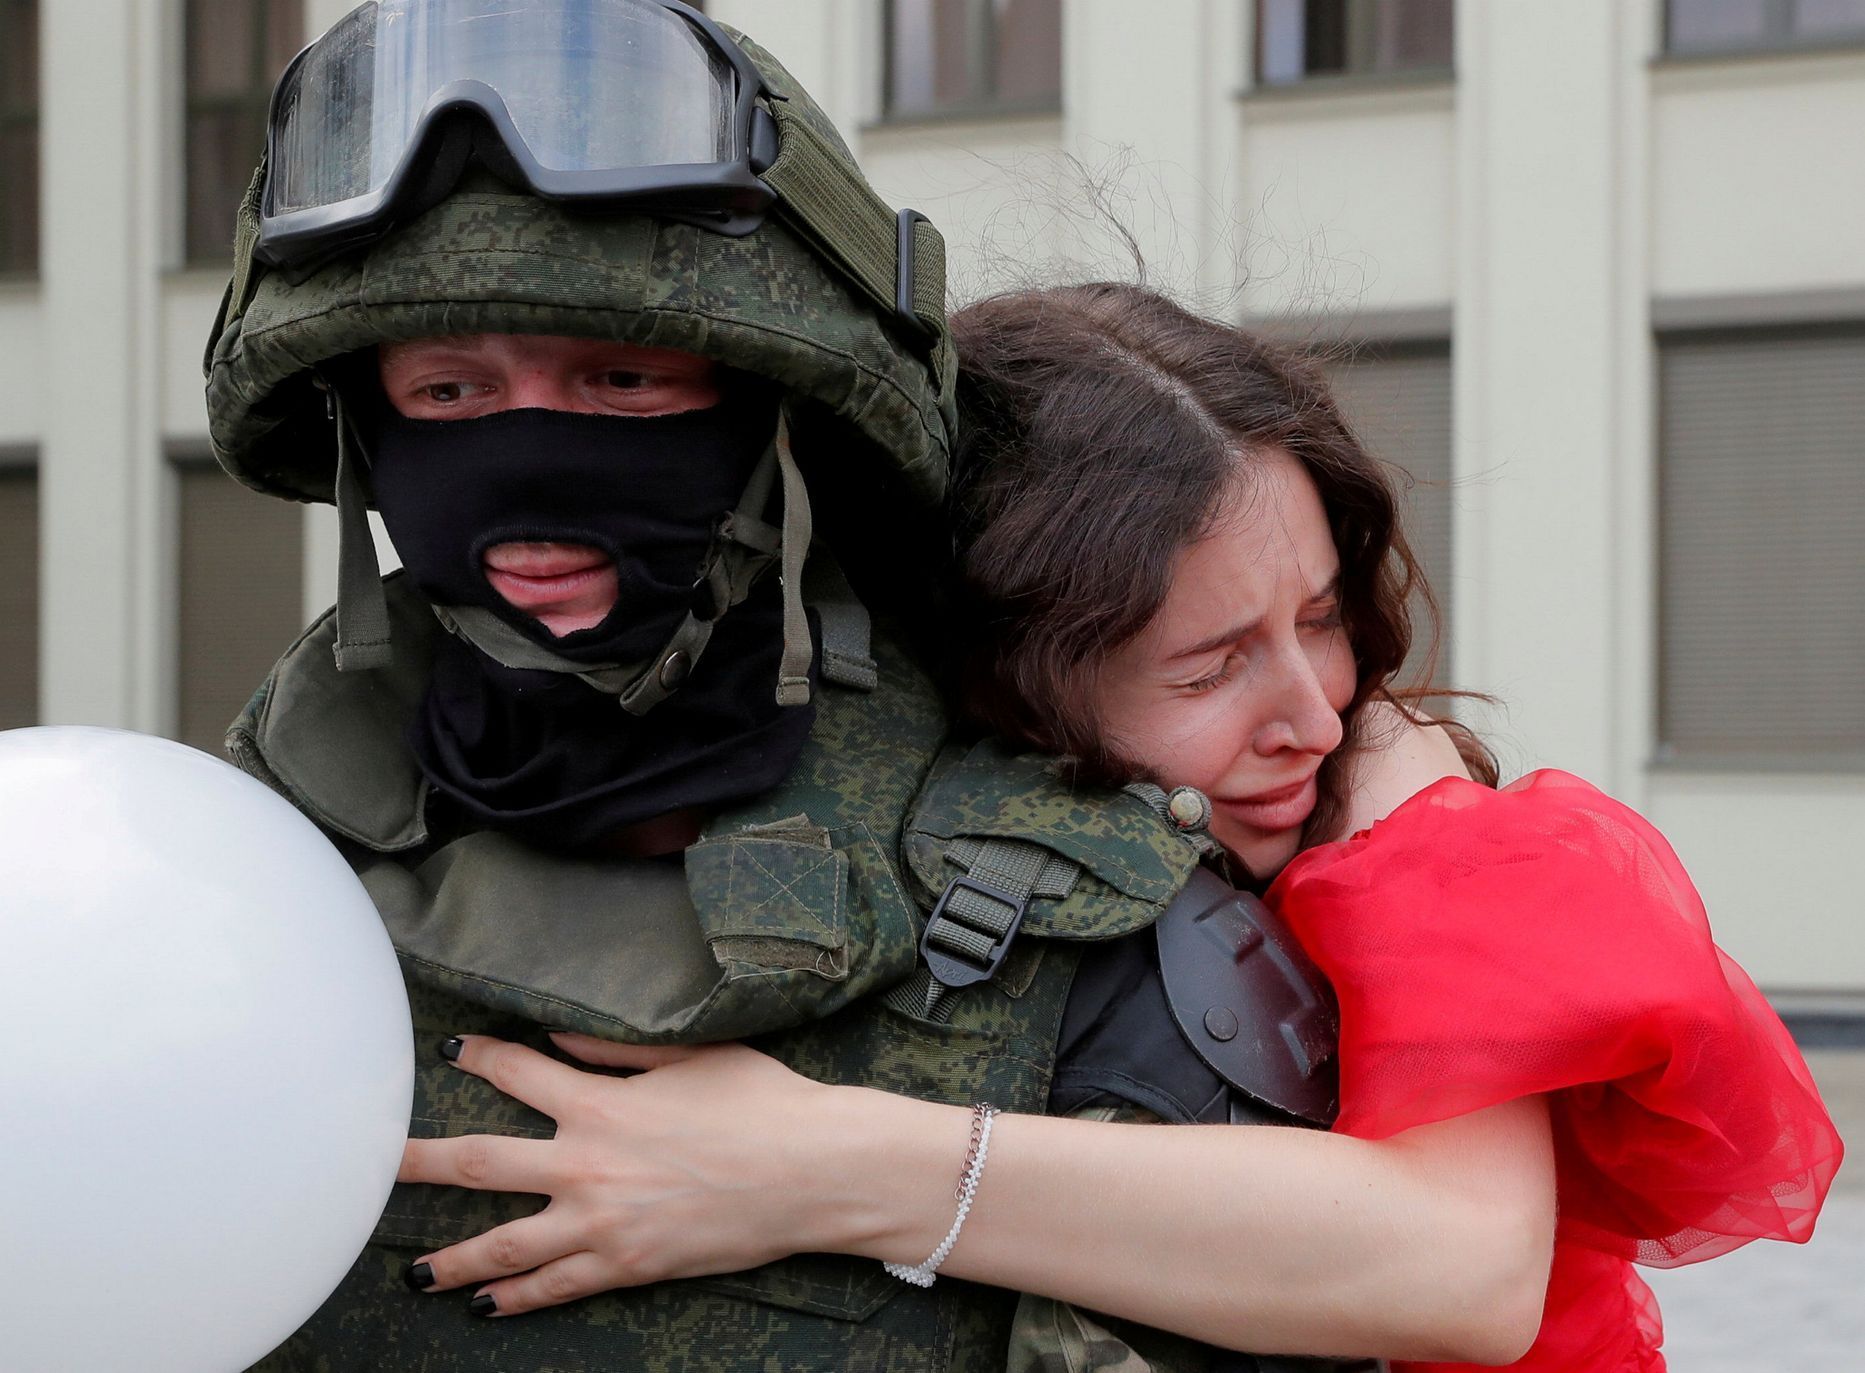 Tuto fotografii vybrala agentura Reuters mezi nejlepší snímky roku 2020. Demonstrantka 14.srpna objímá před budovou vlády v Minsku příslušníka speciálních jednotek.